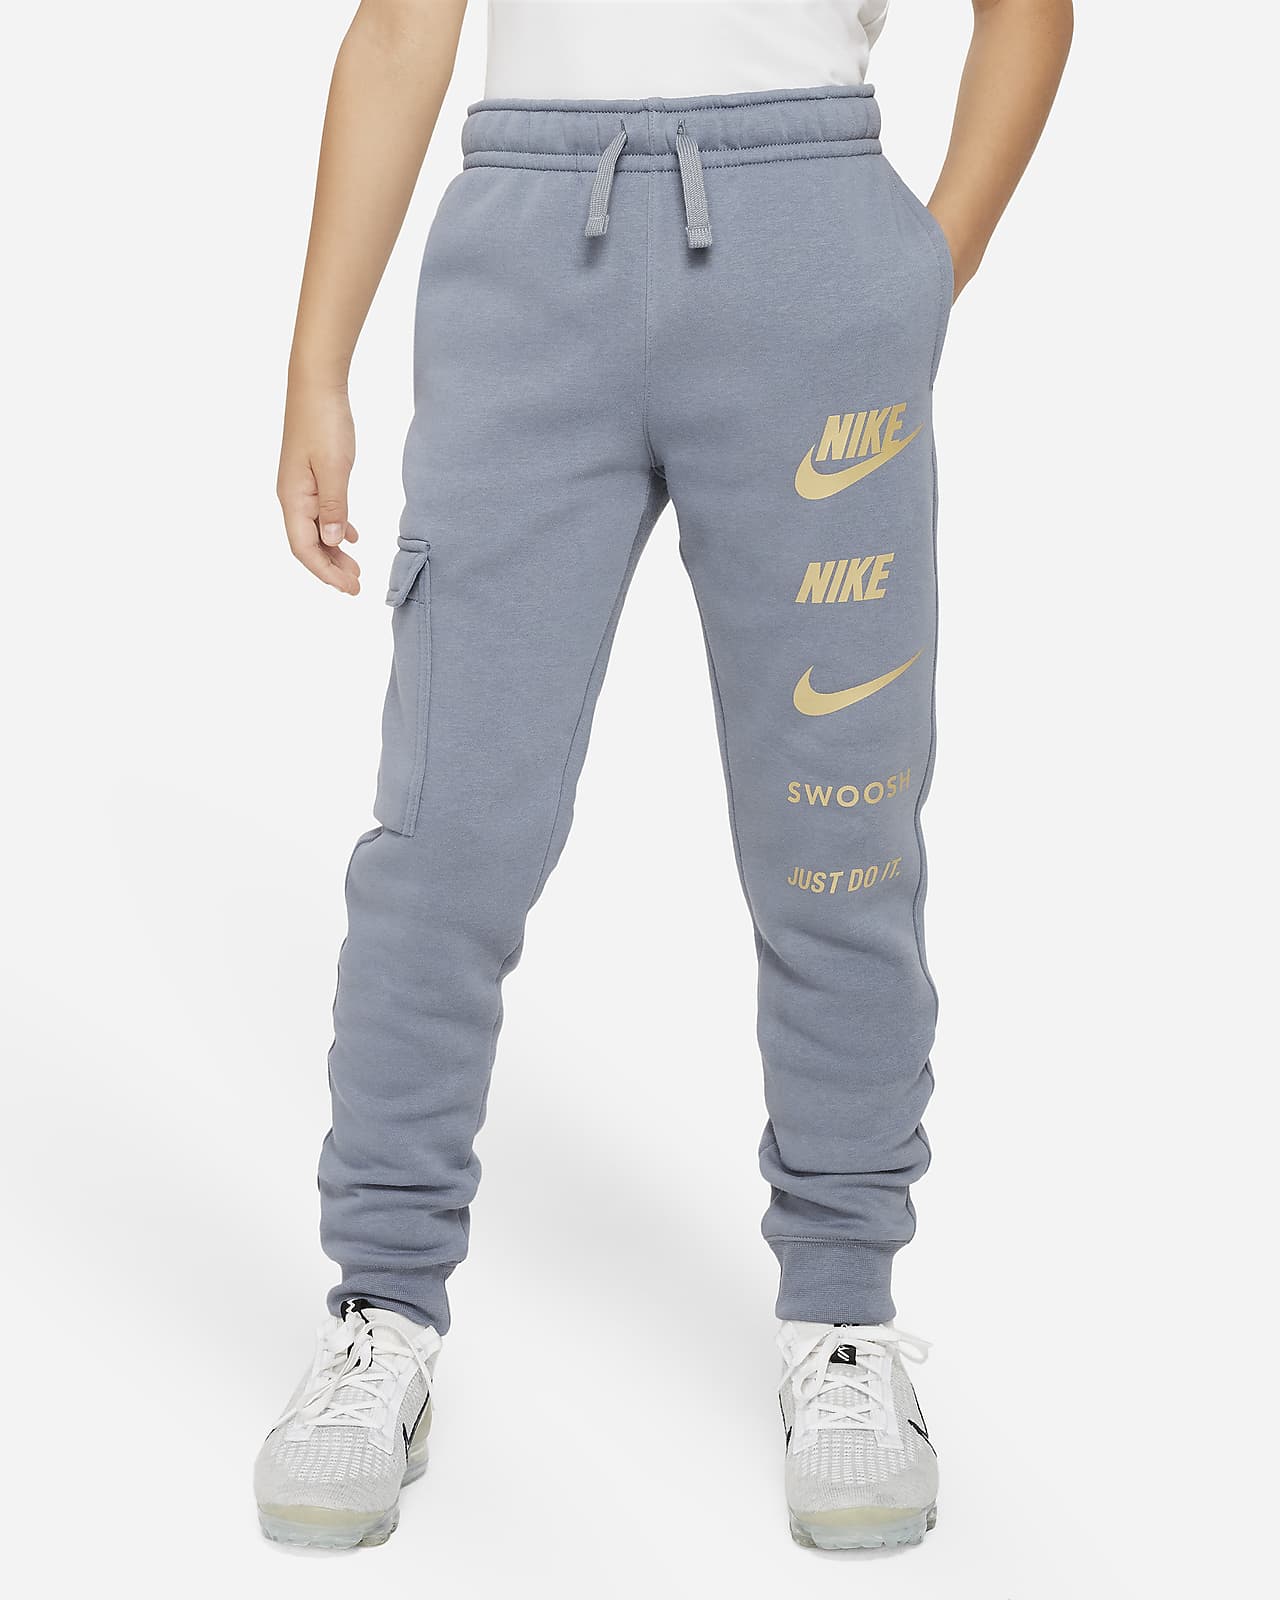 Nike Baggy Pants -  UK